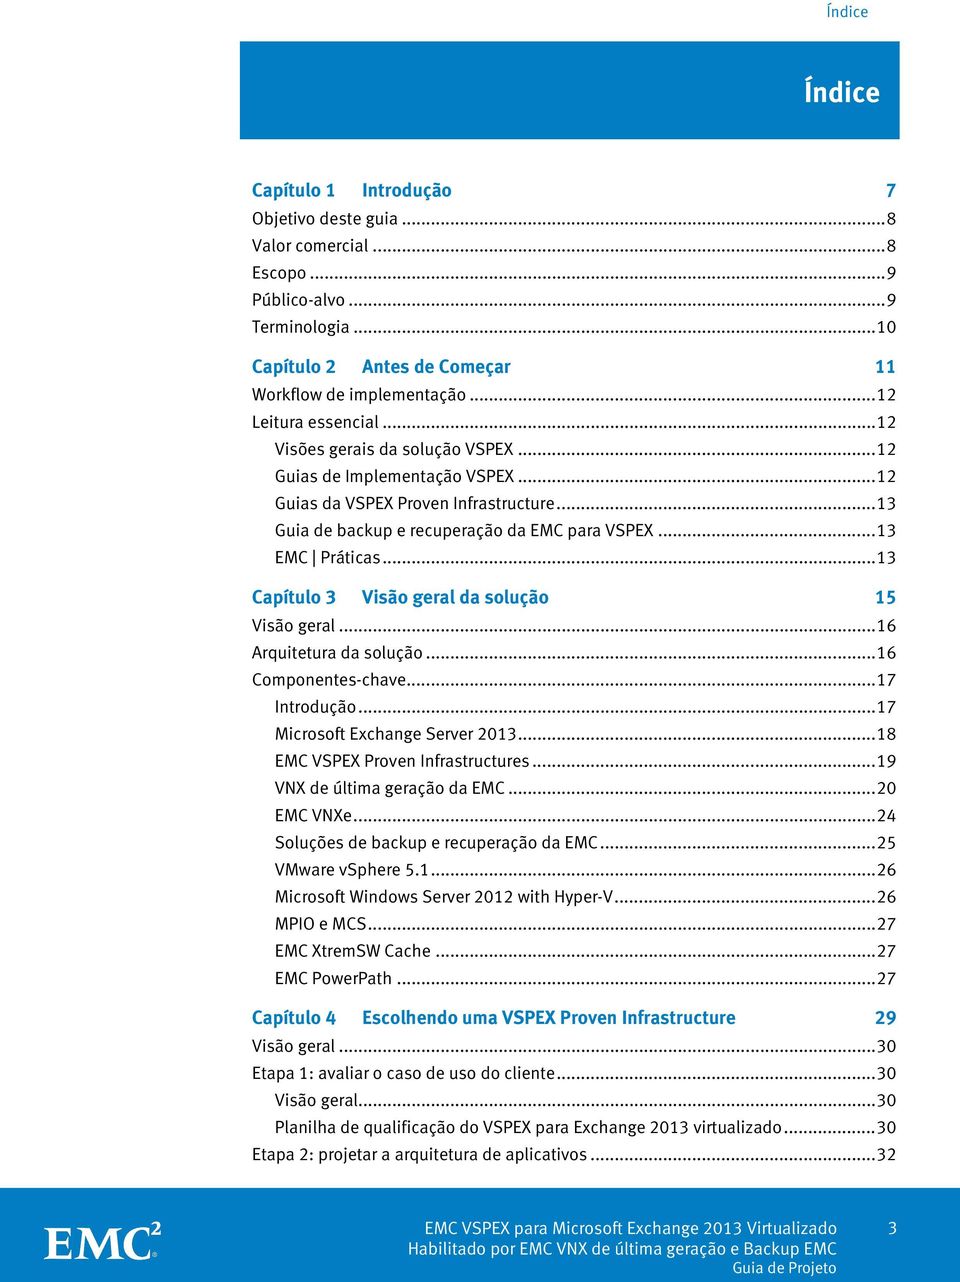 .. 13 EMC Práticas... 13 Capítulo 3 Visão geral da solução 15 Visão geral... 16 Arquitetura da solução... 16 Componentes-chave... 17 Introdução... 17 Microsoft Exchange Server 2013.